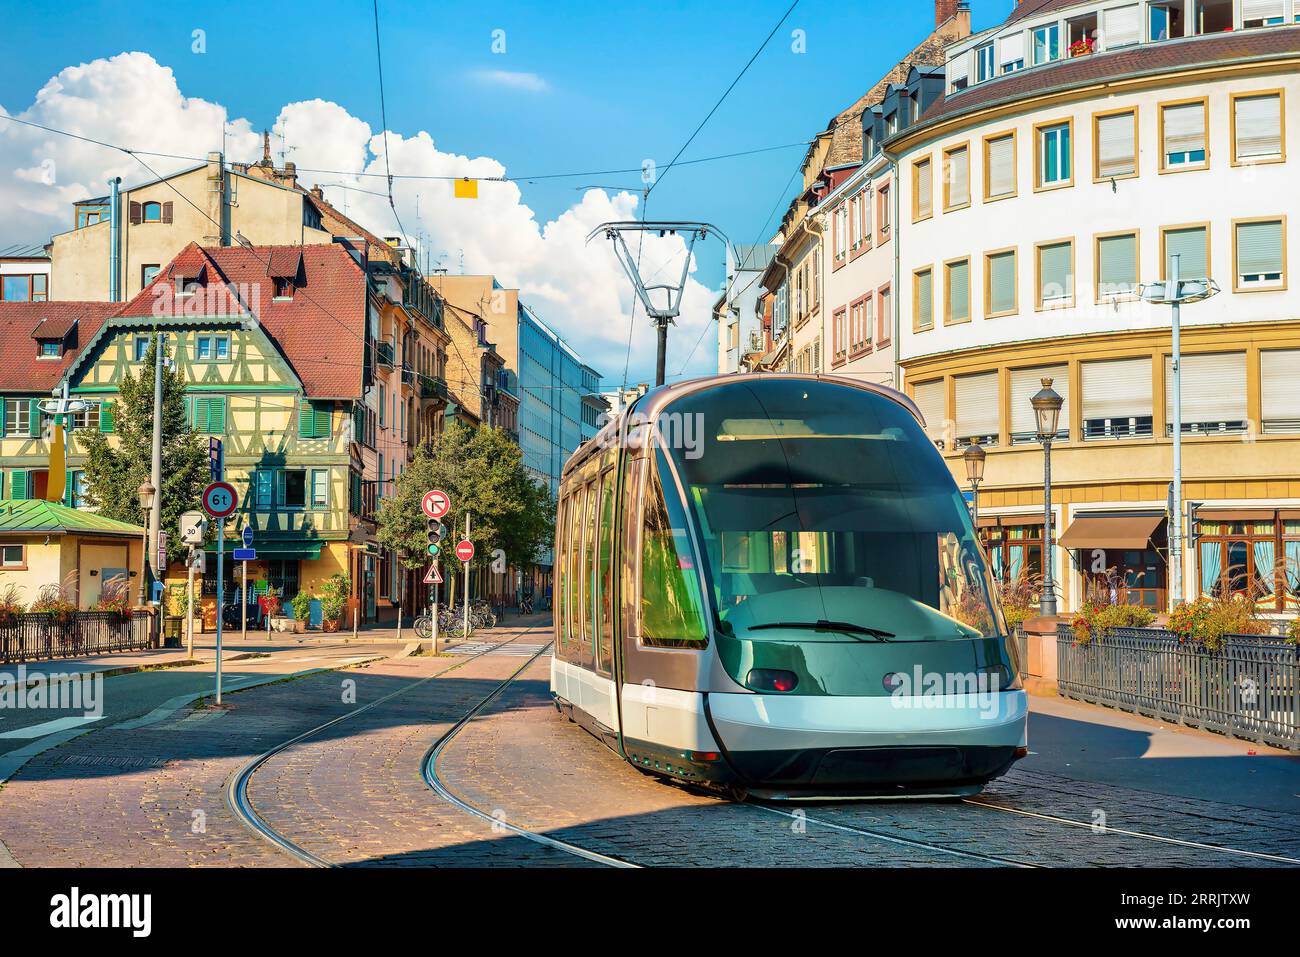 Modern tram on the street of Strasbourg, France Stock Photo